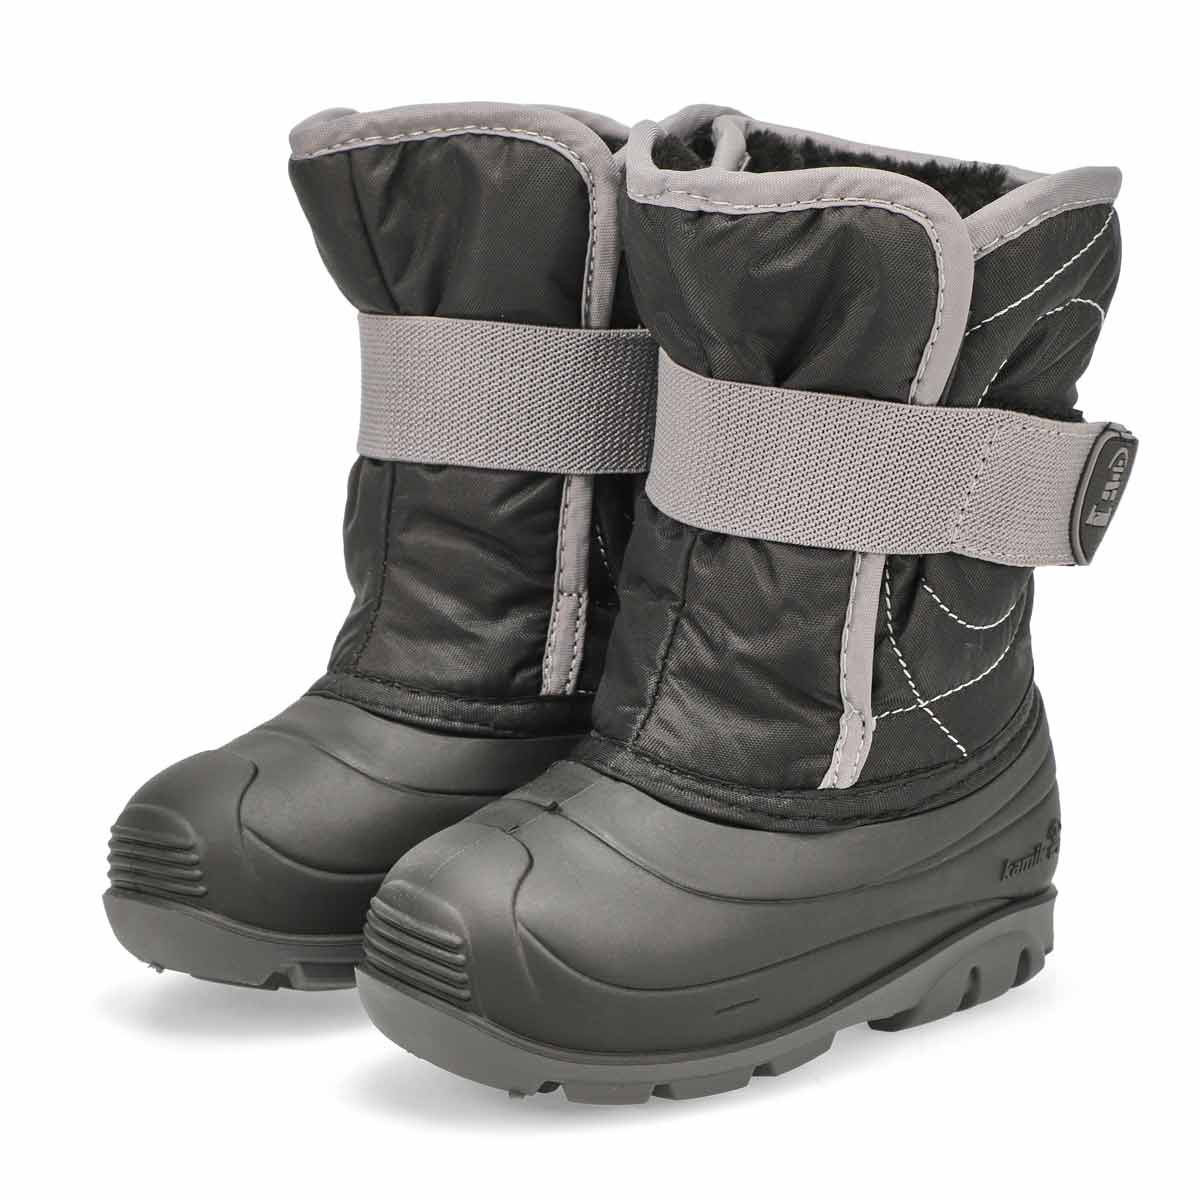 Infants' Snowbug 3 Waterproof Winter boot - Black